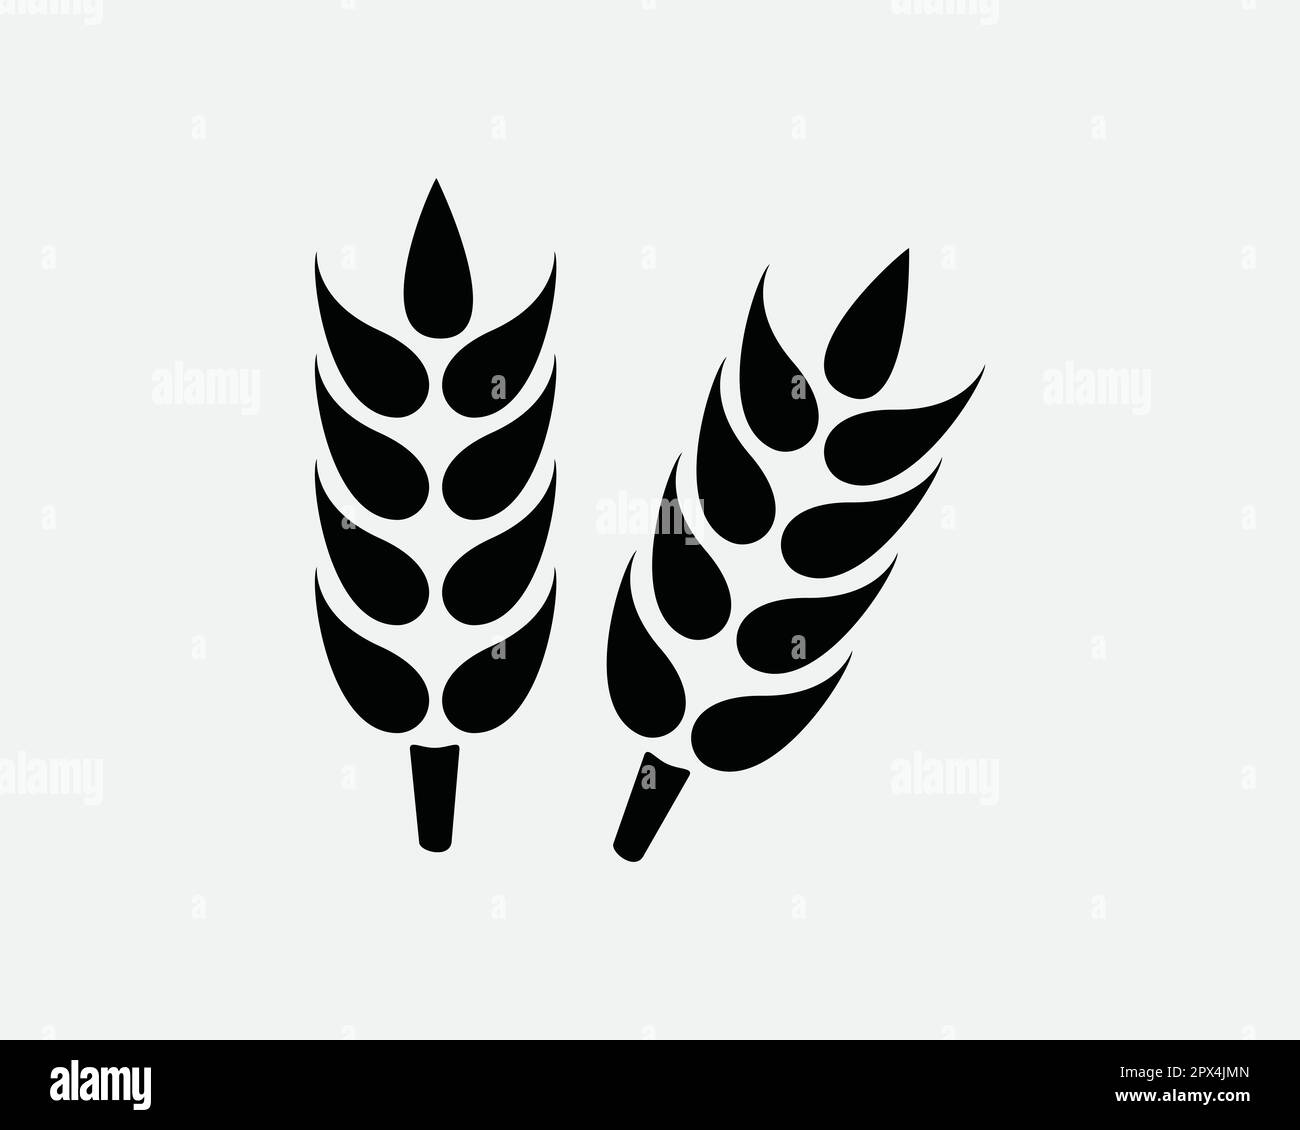 Grain de blé Agriculture récolte de céréales orge semence noir et blanc icône symbole Vector Illustration Clipart Illustration Illustration de Vecteur